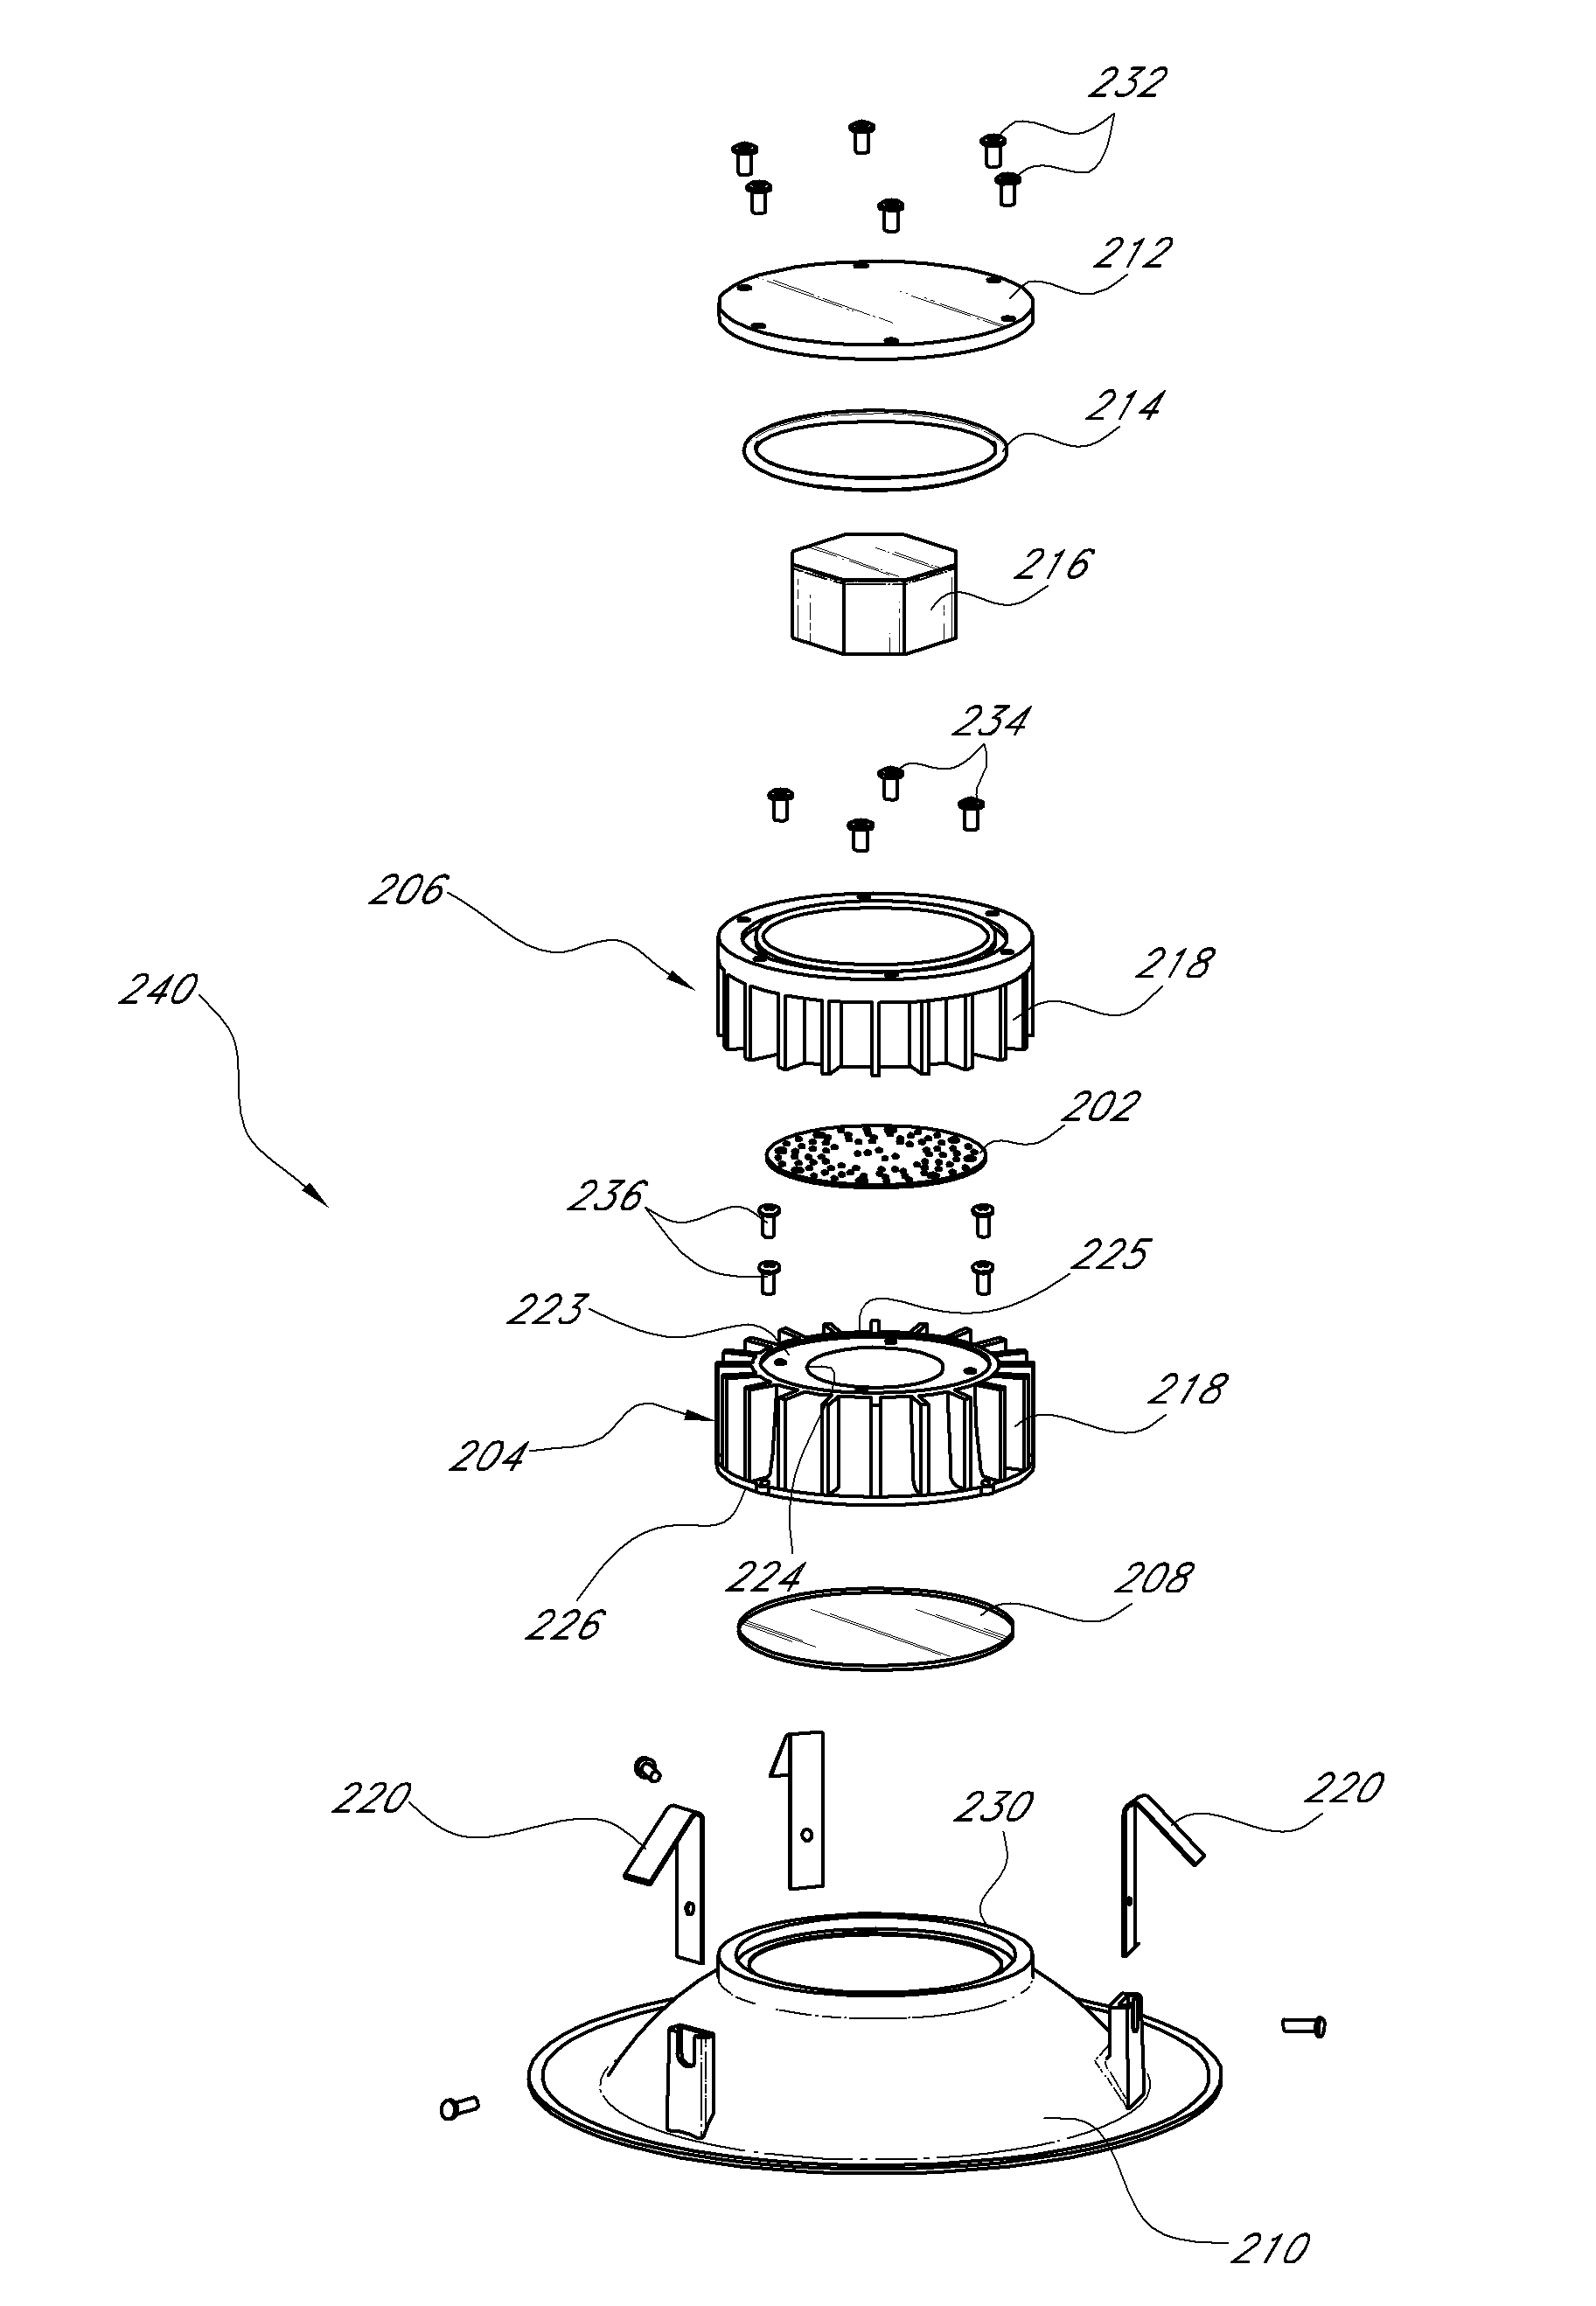 Led-based light engine